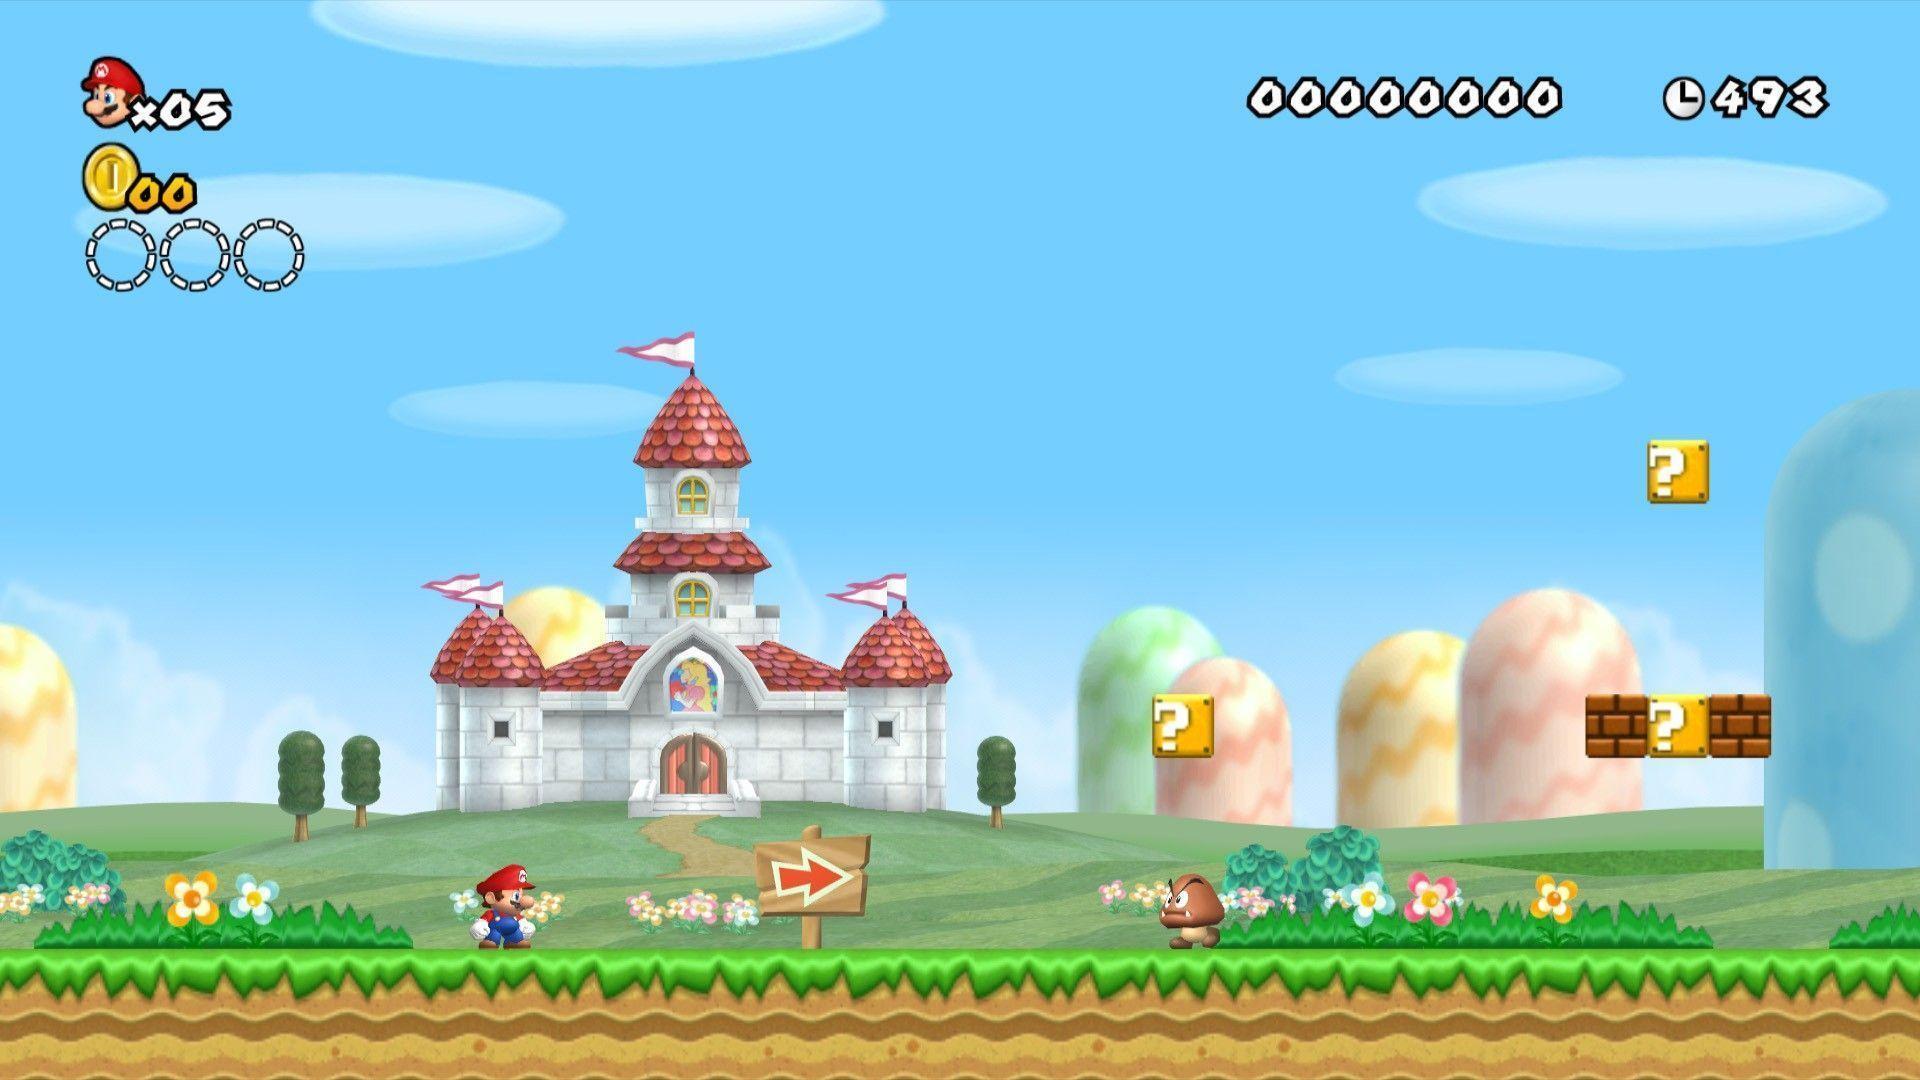 Mario Kart Wii Wallpapers